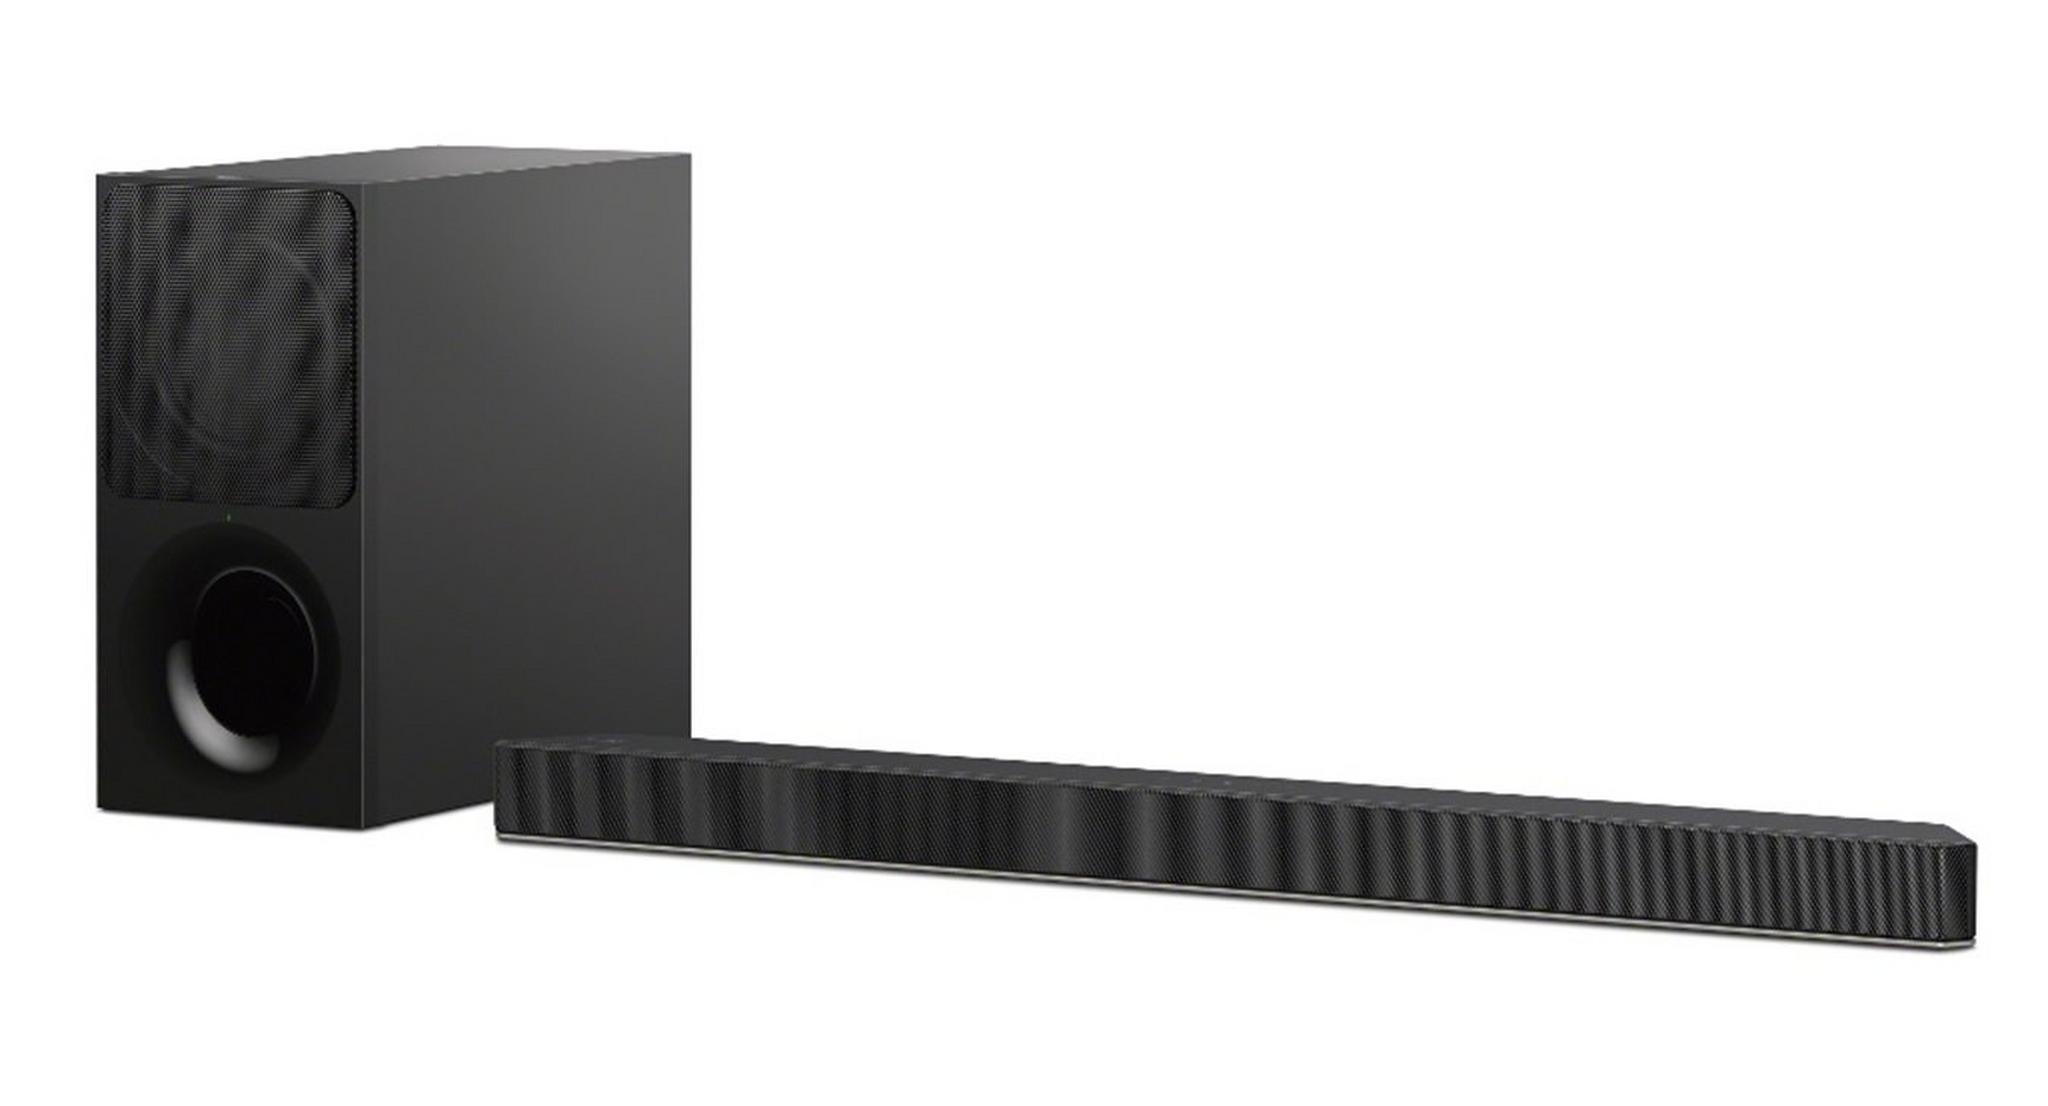 Sony 300W Wireless Bluetooth Soundbar (HT-X9000F) - Black